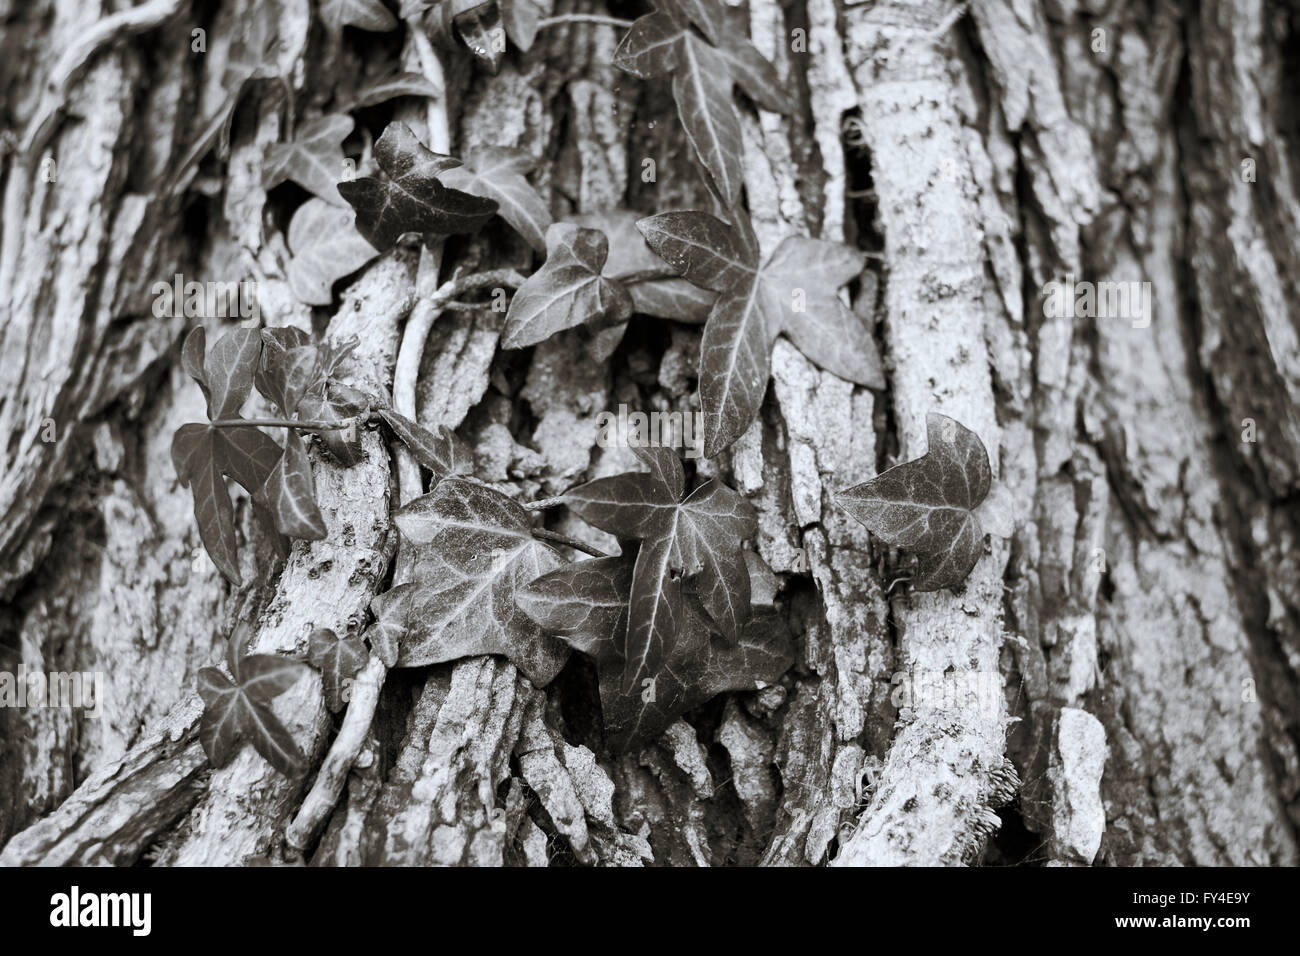 Le lierre (Hedera helix) qui poussent sur le tronc d'un arbre. Image Monochrome. Banque D'Images